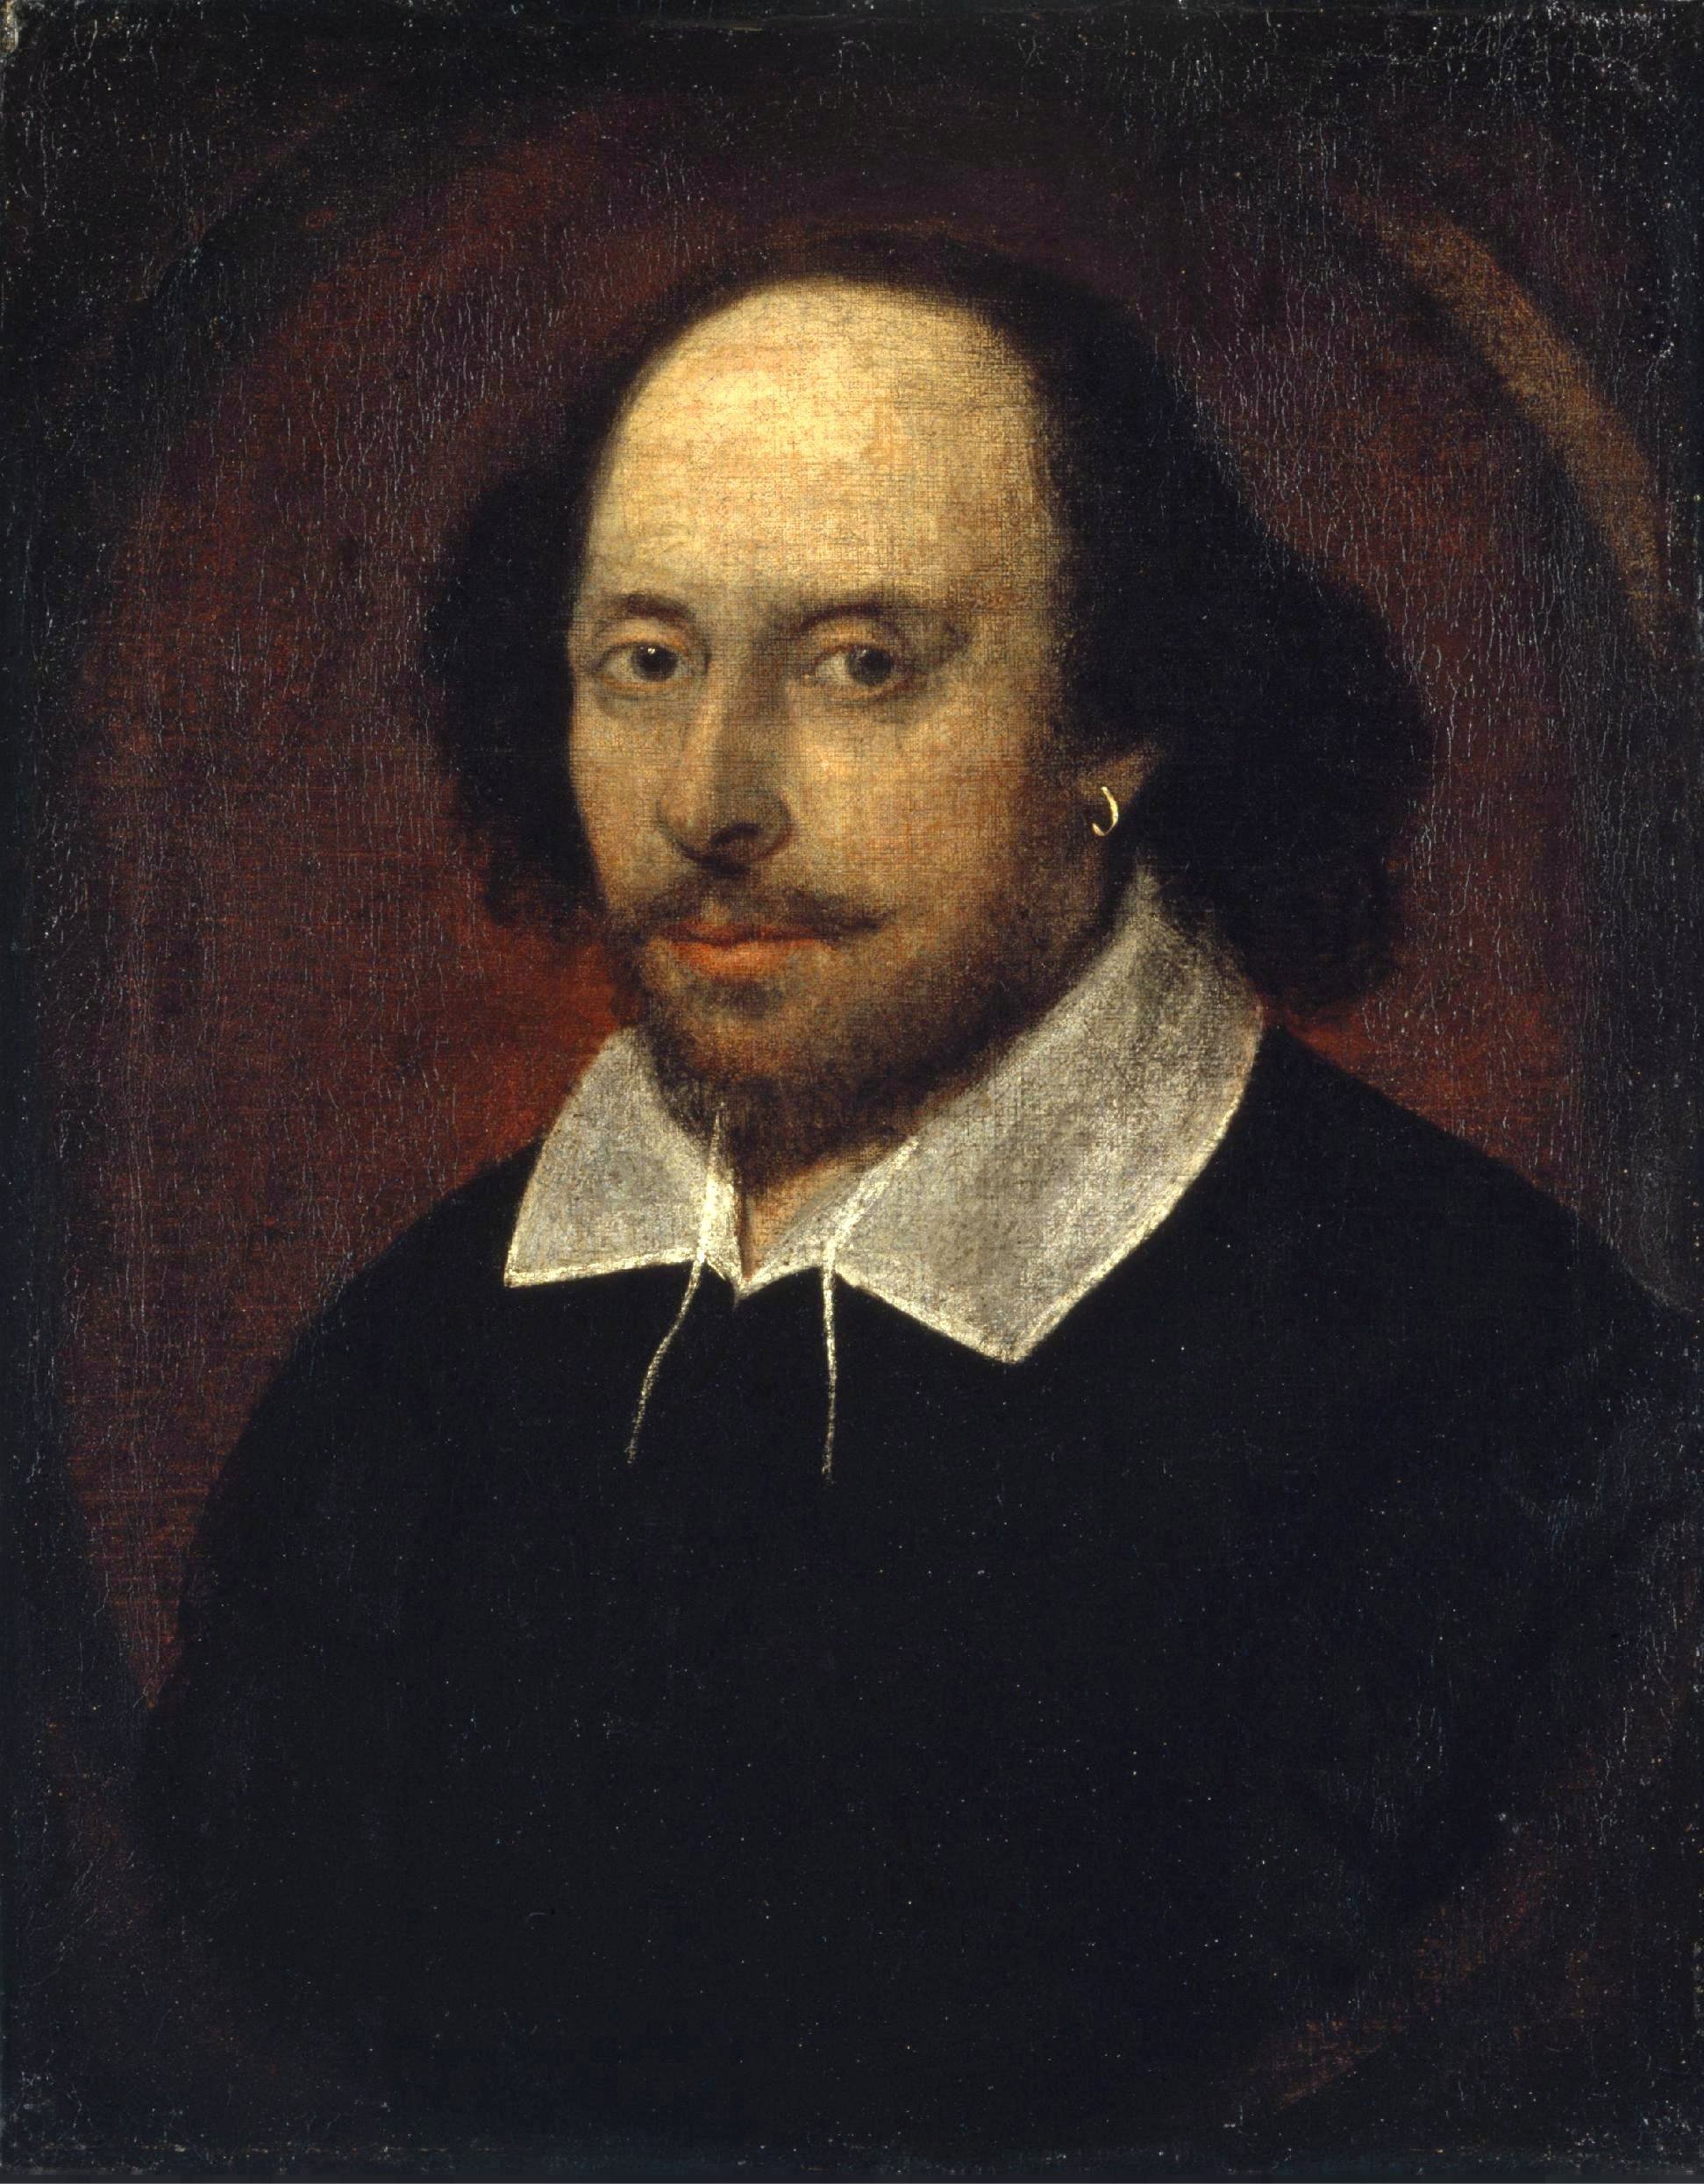 莎士比亚诞辰450周年:今天怎样读懂莎士比亚